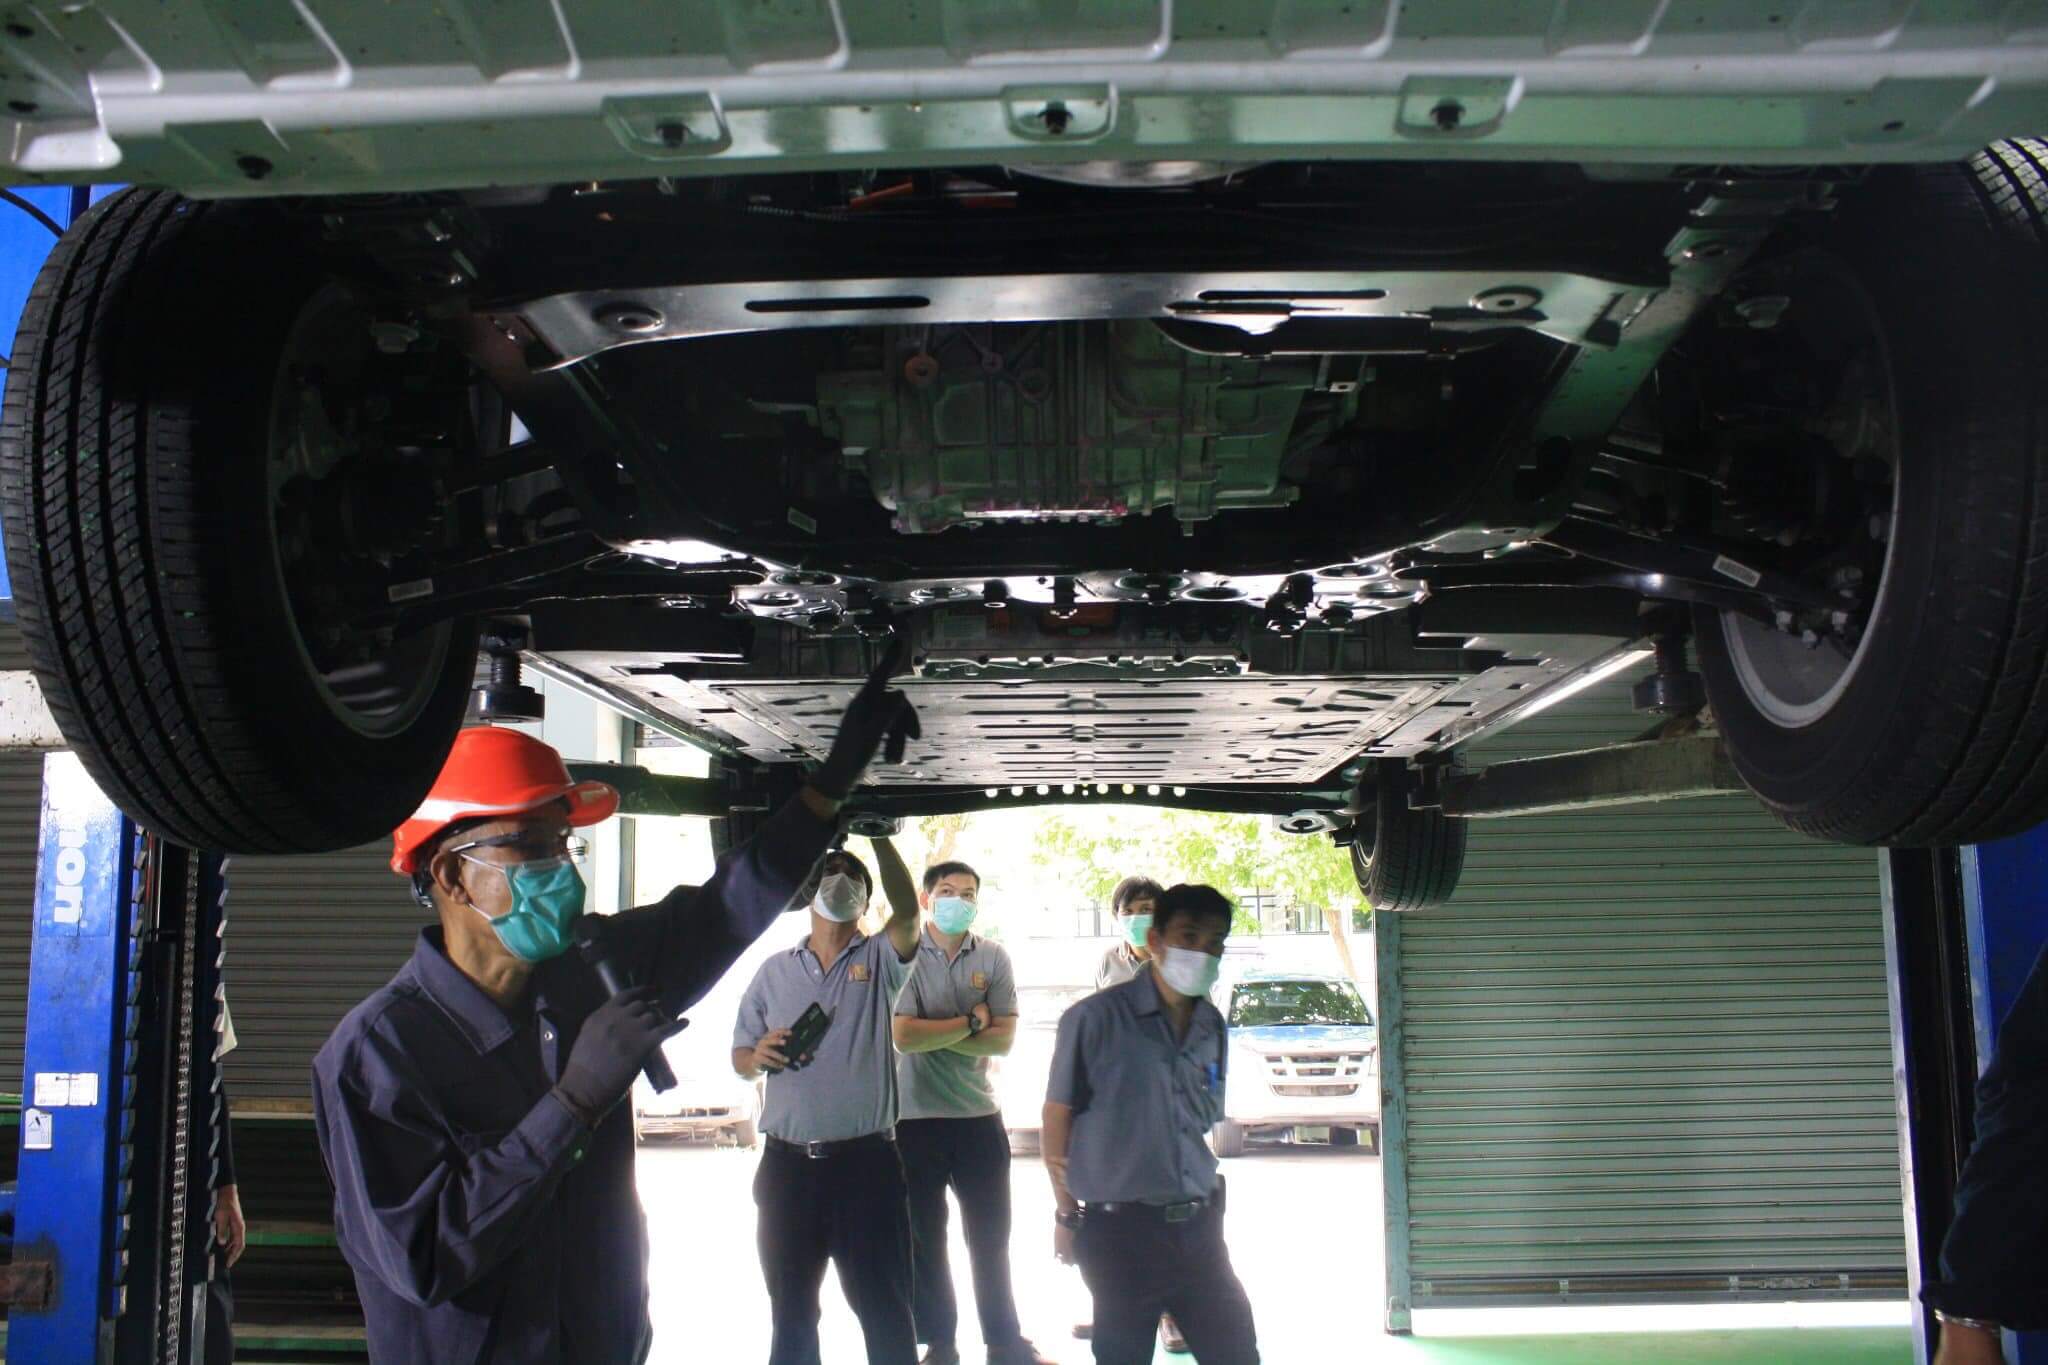 มทรส.เปิดศูนย์ทดสอบมาตรฐานฯซ่อมบำรุงรถยนต์ไฟฟ้าแห่งแรกในประเทศไทย